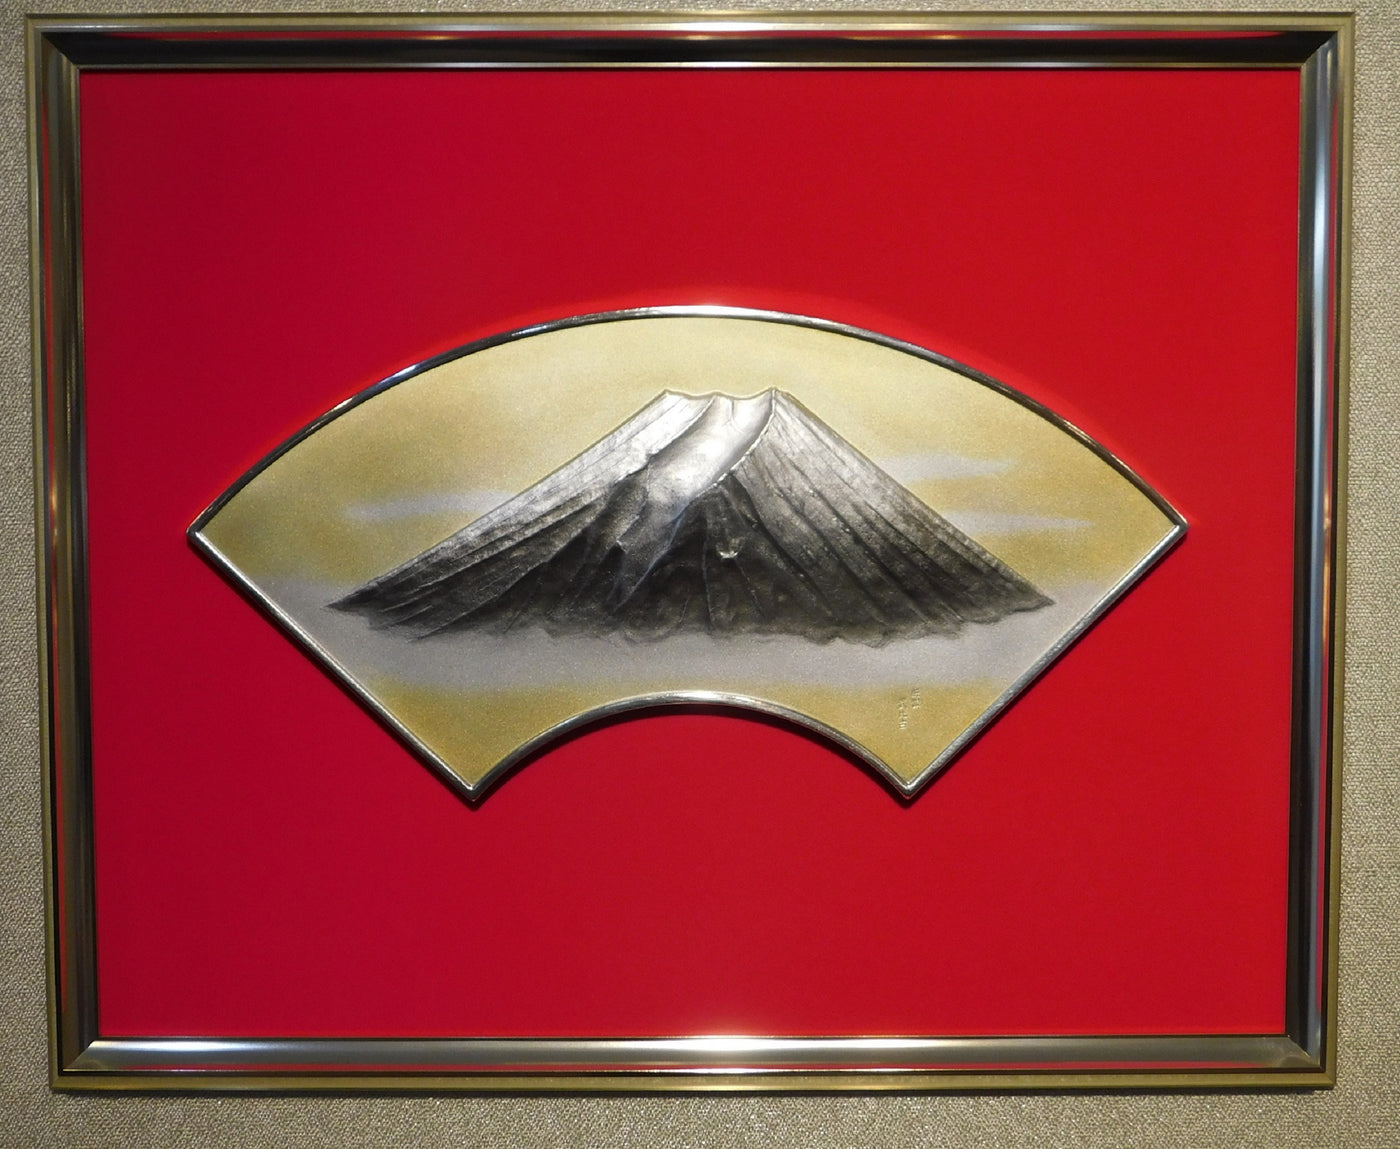 Pure silver framed Fan face of Mt.Fuji 7